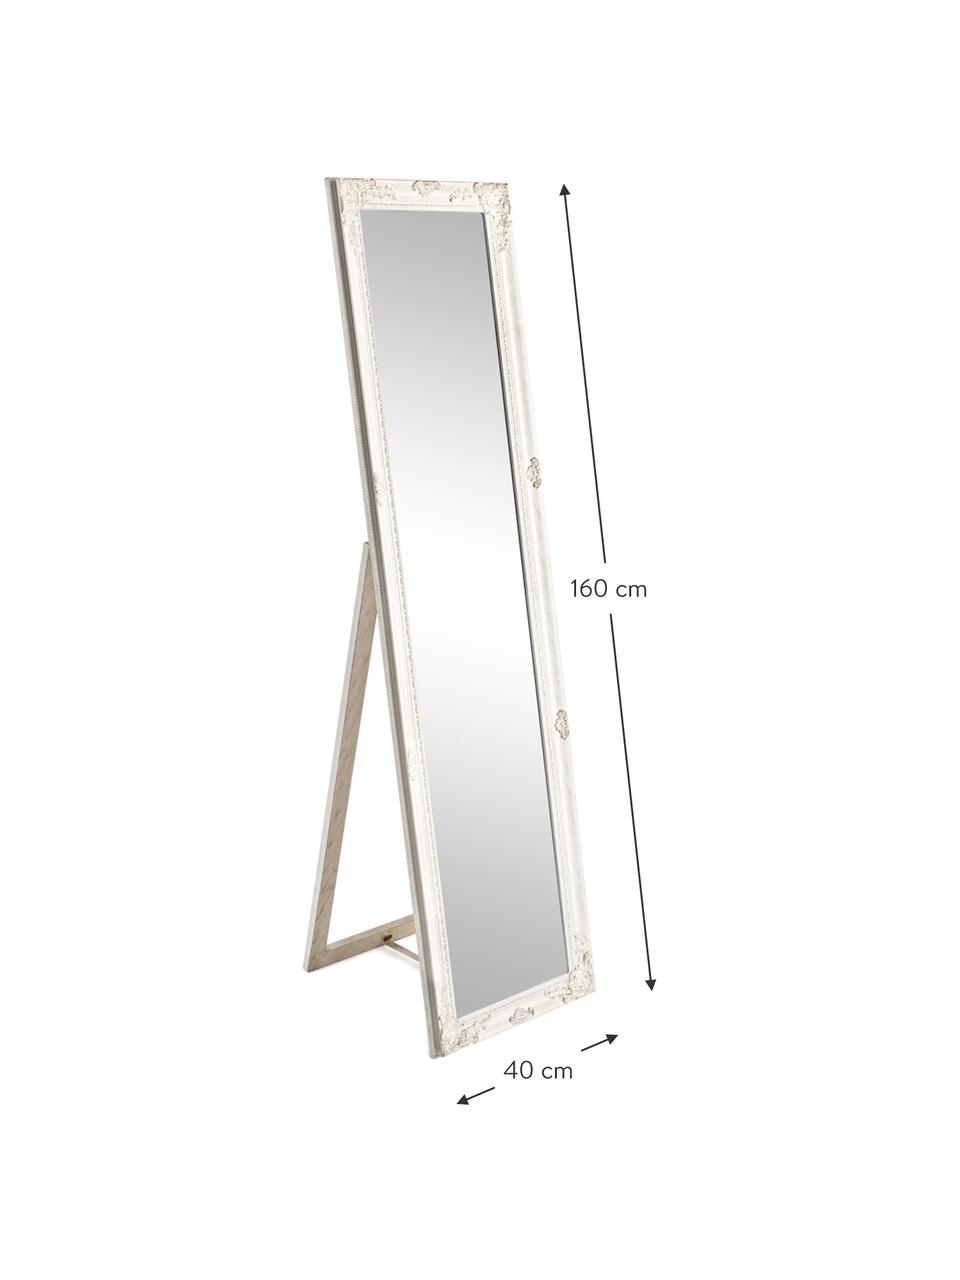 Standspiegel Miro mit weißem Rahmen, Rahmen: Holz, beschichtet, Spiegelfläche: Spiegelglas, Weiß, 40 x 160 cm